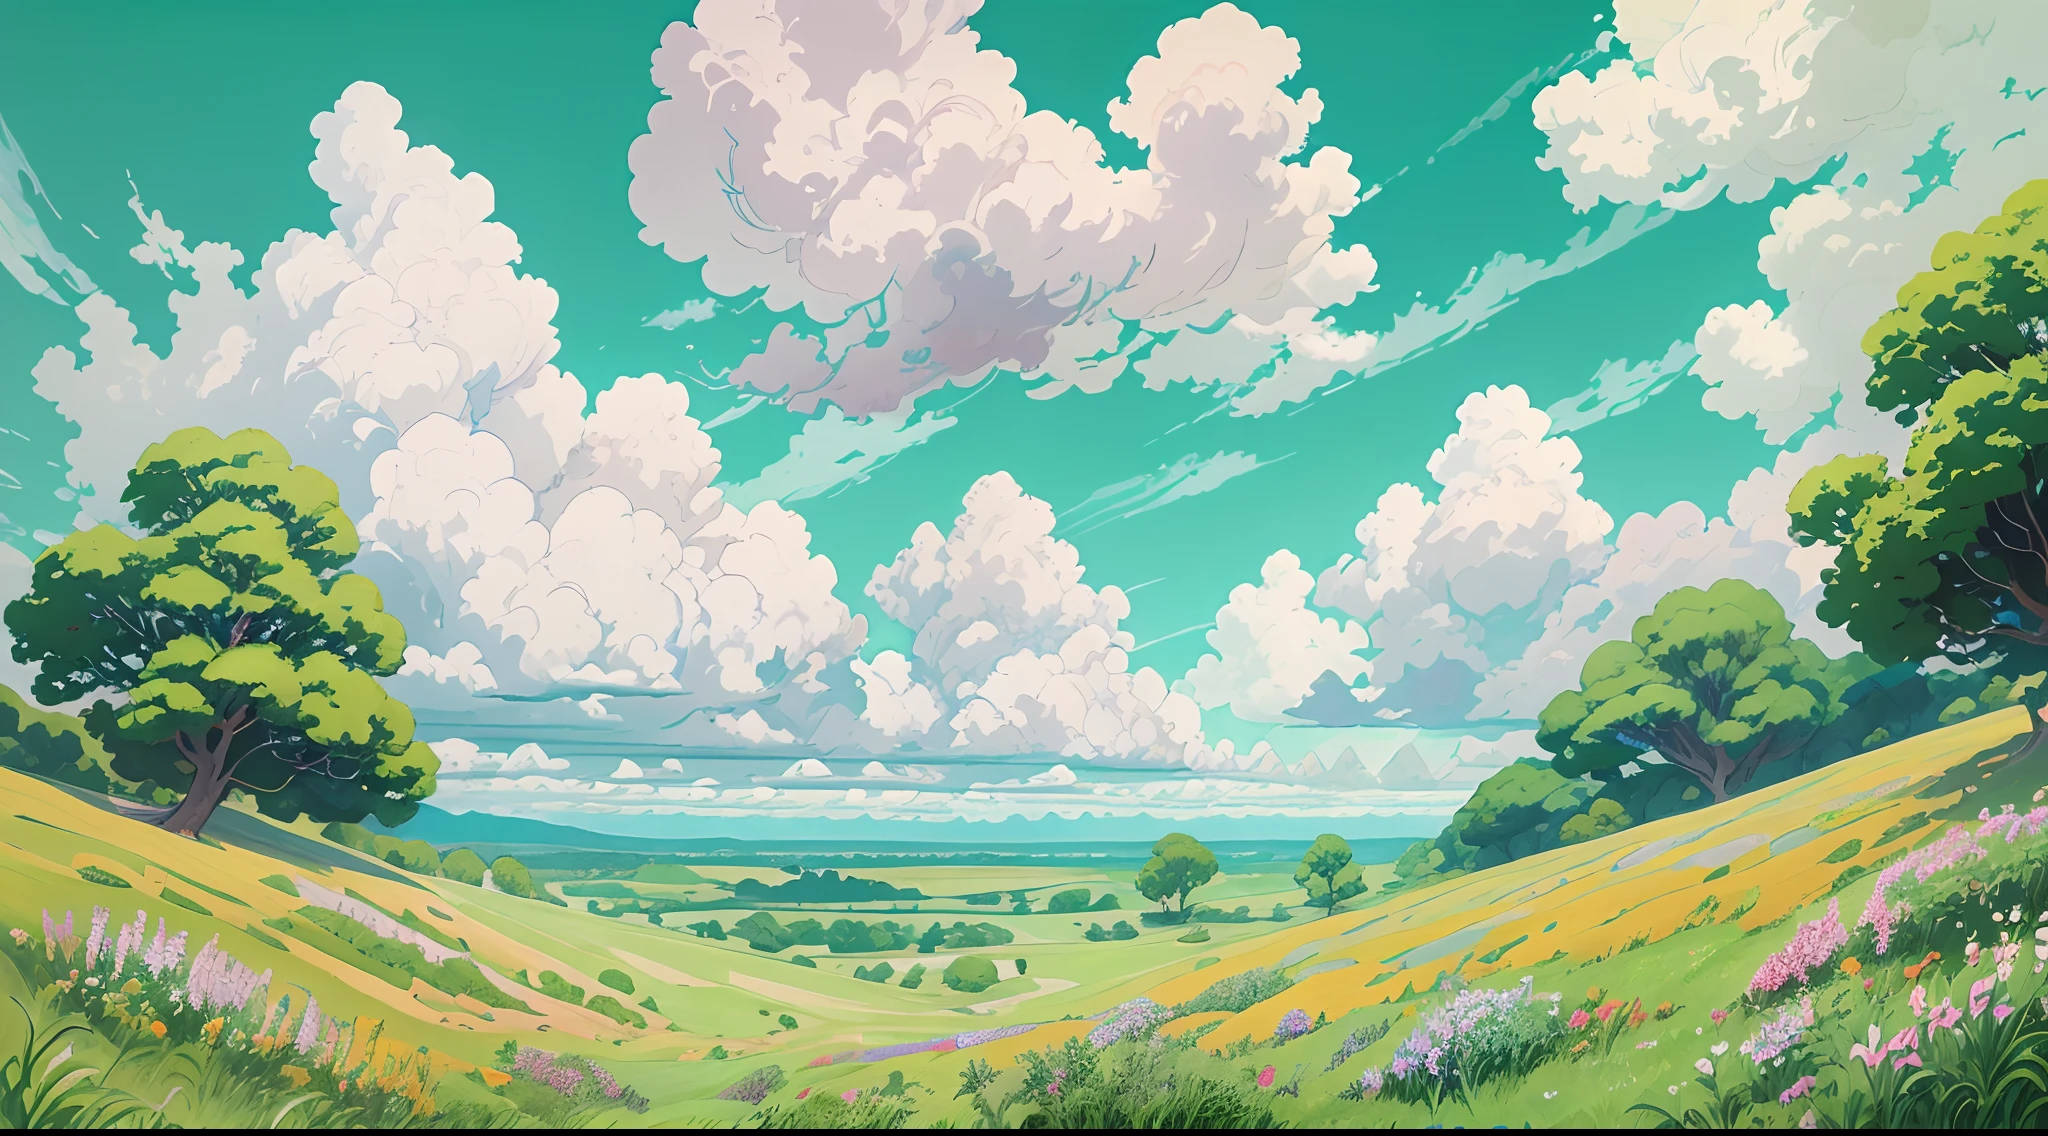 現実的, 本物, 美しく素晴らしい風景油絵スタジオジブリ宮崎駿&#39;青い空と白い雲の花びらの草原 --v6